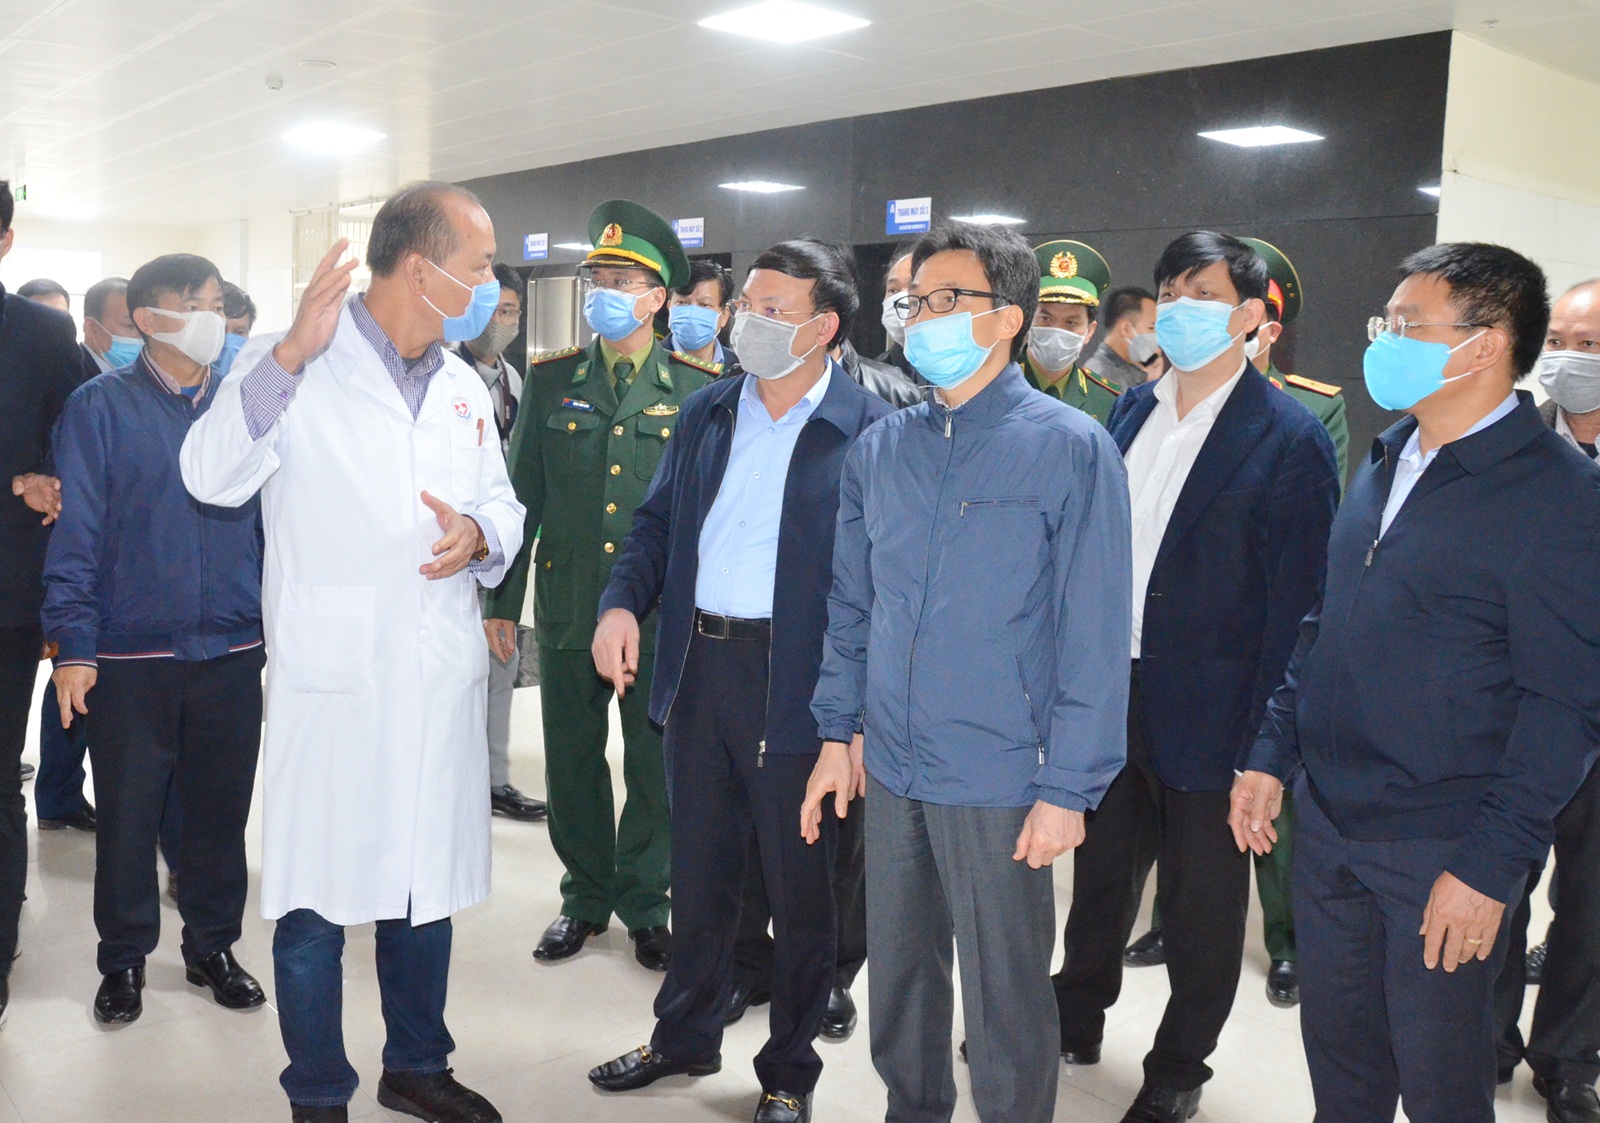 Phó Thủ tướng Chính phủ Vũ Đức Đam kiểm tra công tác chuẩn bị các điều kiện phòng, chống dịch Covid-19 của Bệnh viện số 1, tại TTYT TP Móng Cái. (Ảnh chụp tháng 2/2020) Ảnh: Nguyễn Thanh